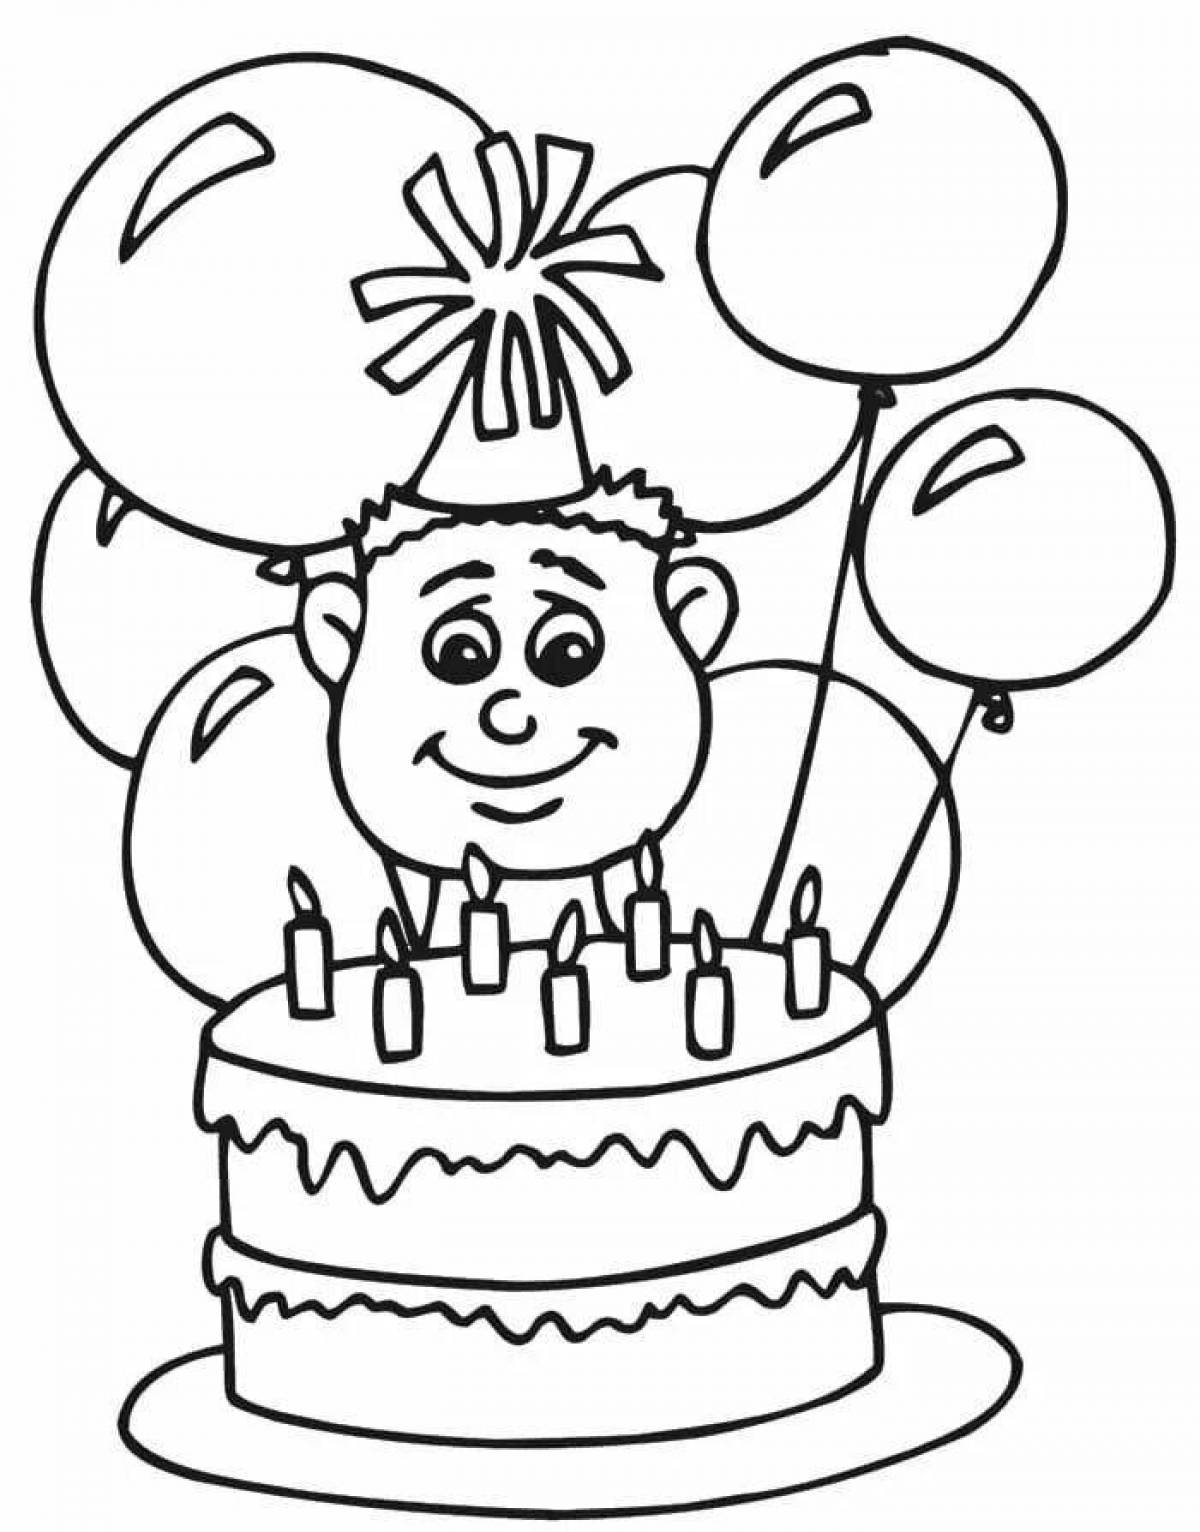 Рисовать рисунки на день рождения. Рисунок на день рождения. Раскраски сдном рождения. Раскраска "с днем рождения!". Раскраска надинрошдения.